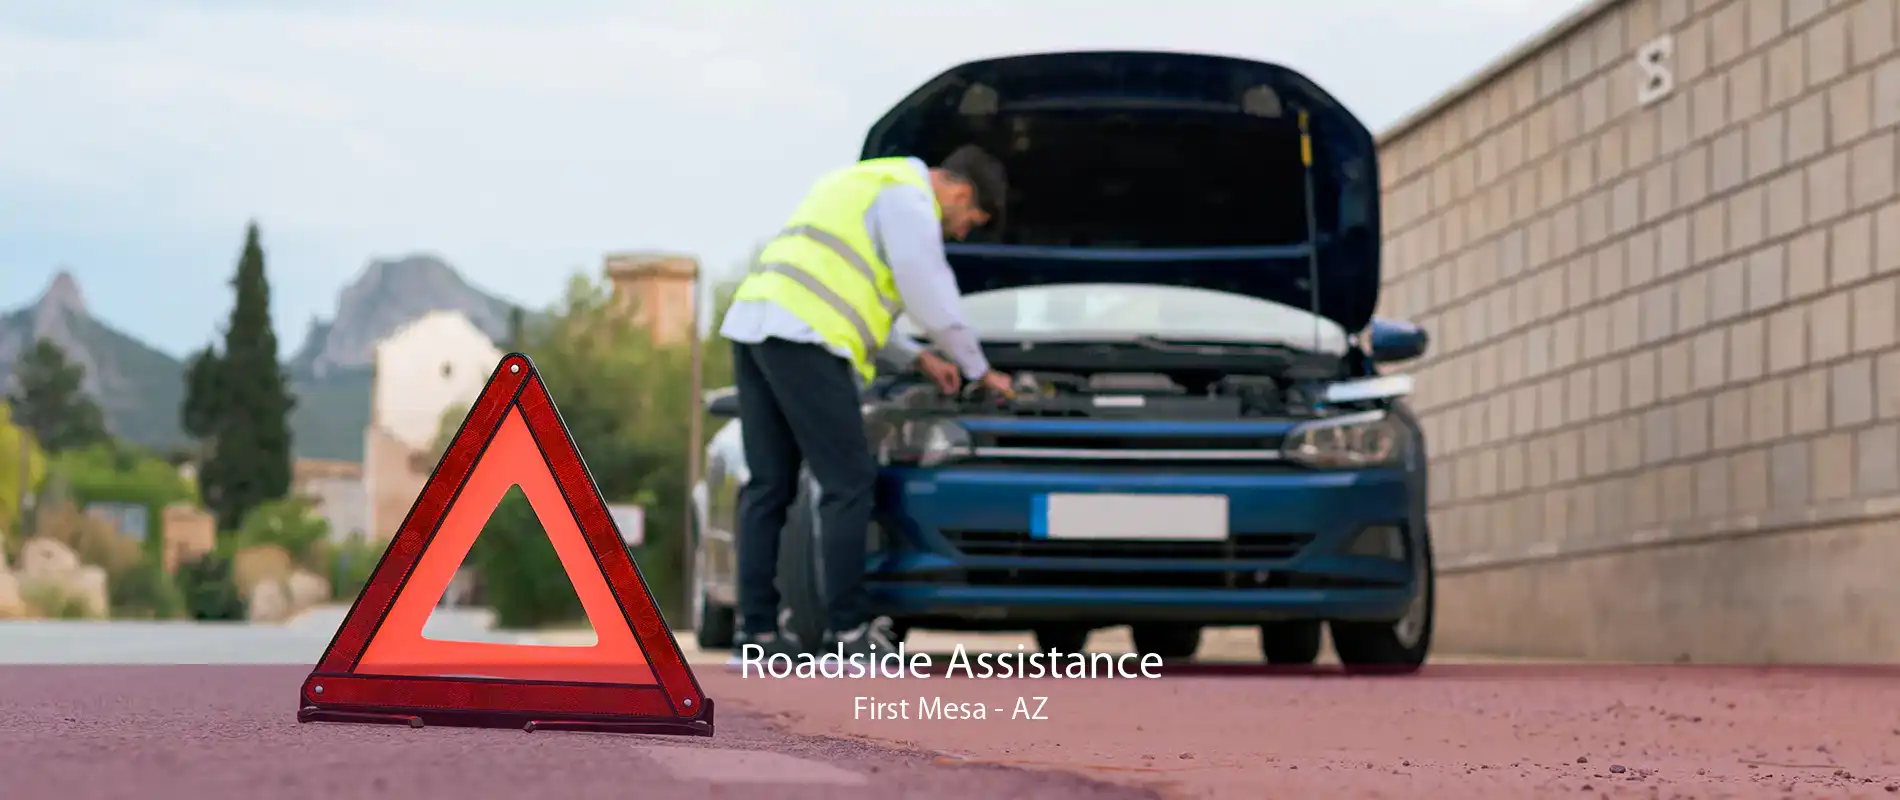 Roadside Assistance First Mesa - AZ